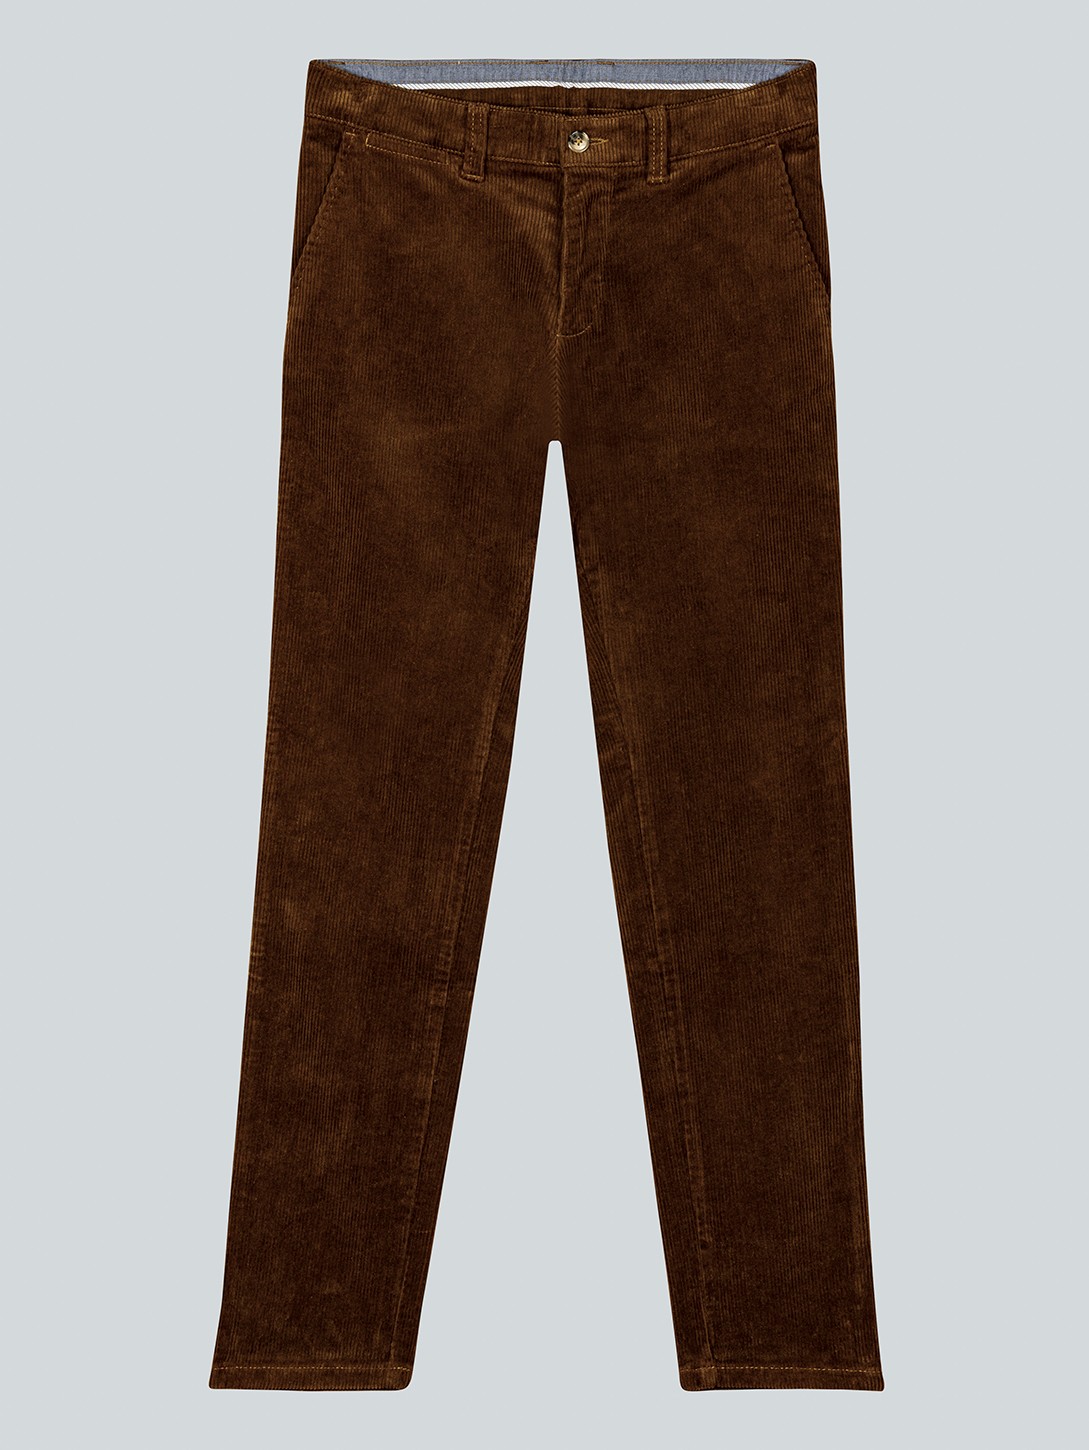 Pantalon chino en velours stretch homme – Coloris camel – Bayard